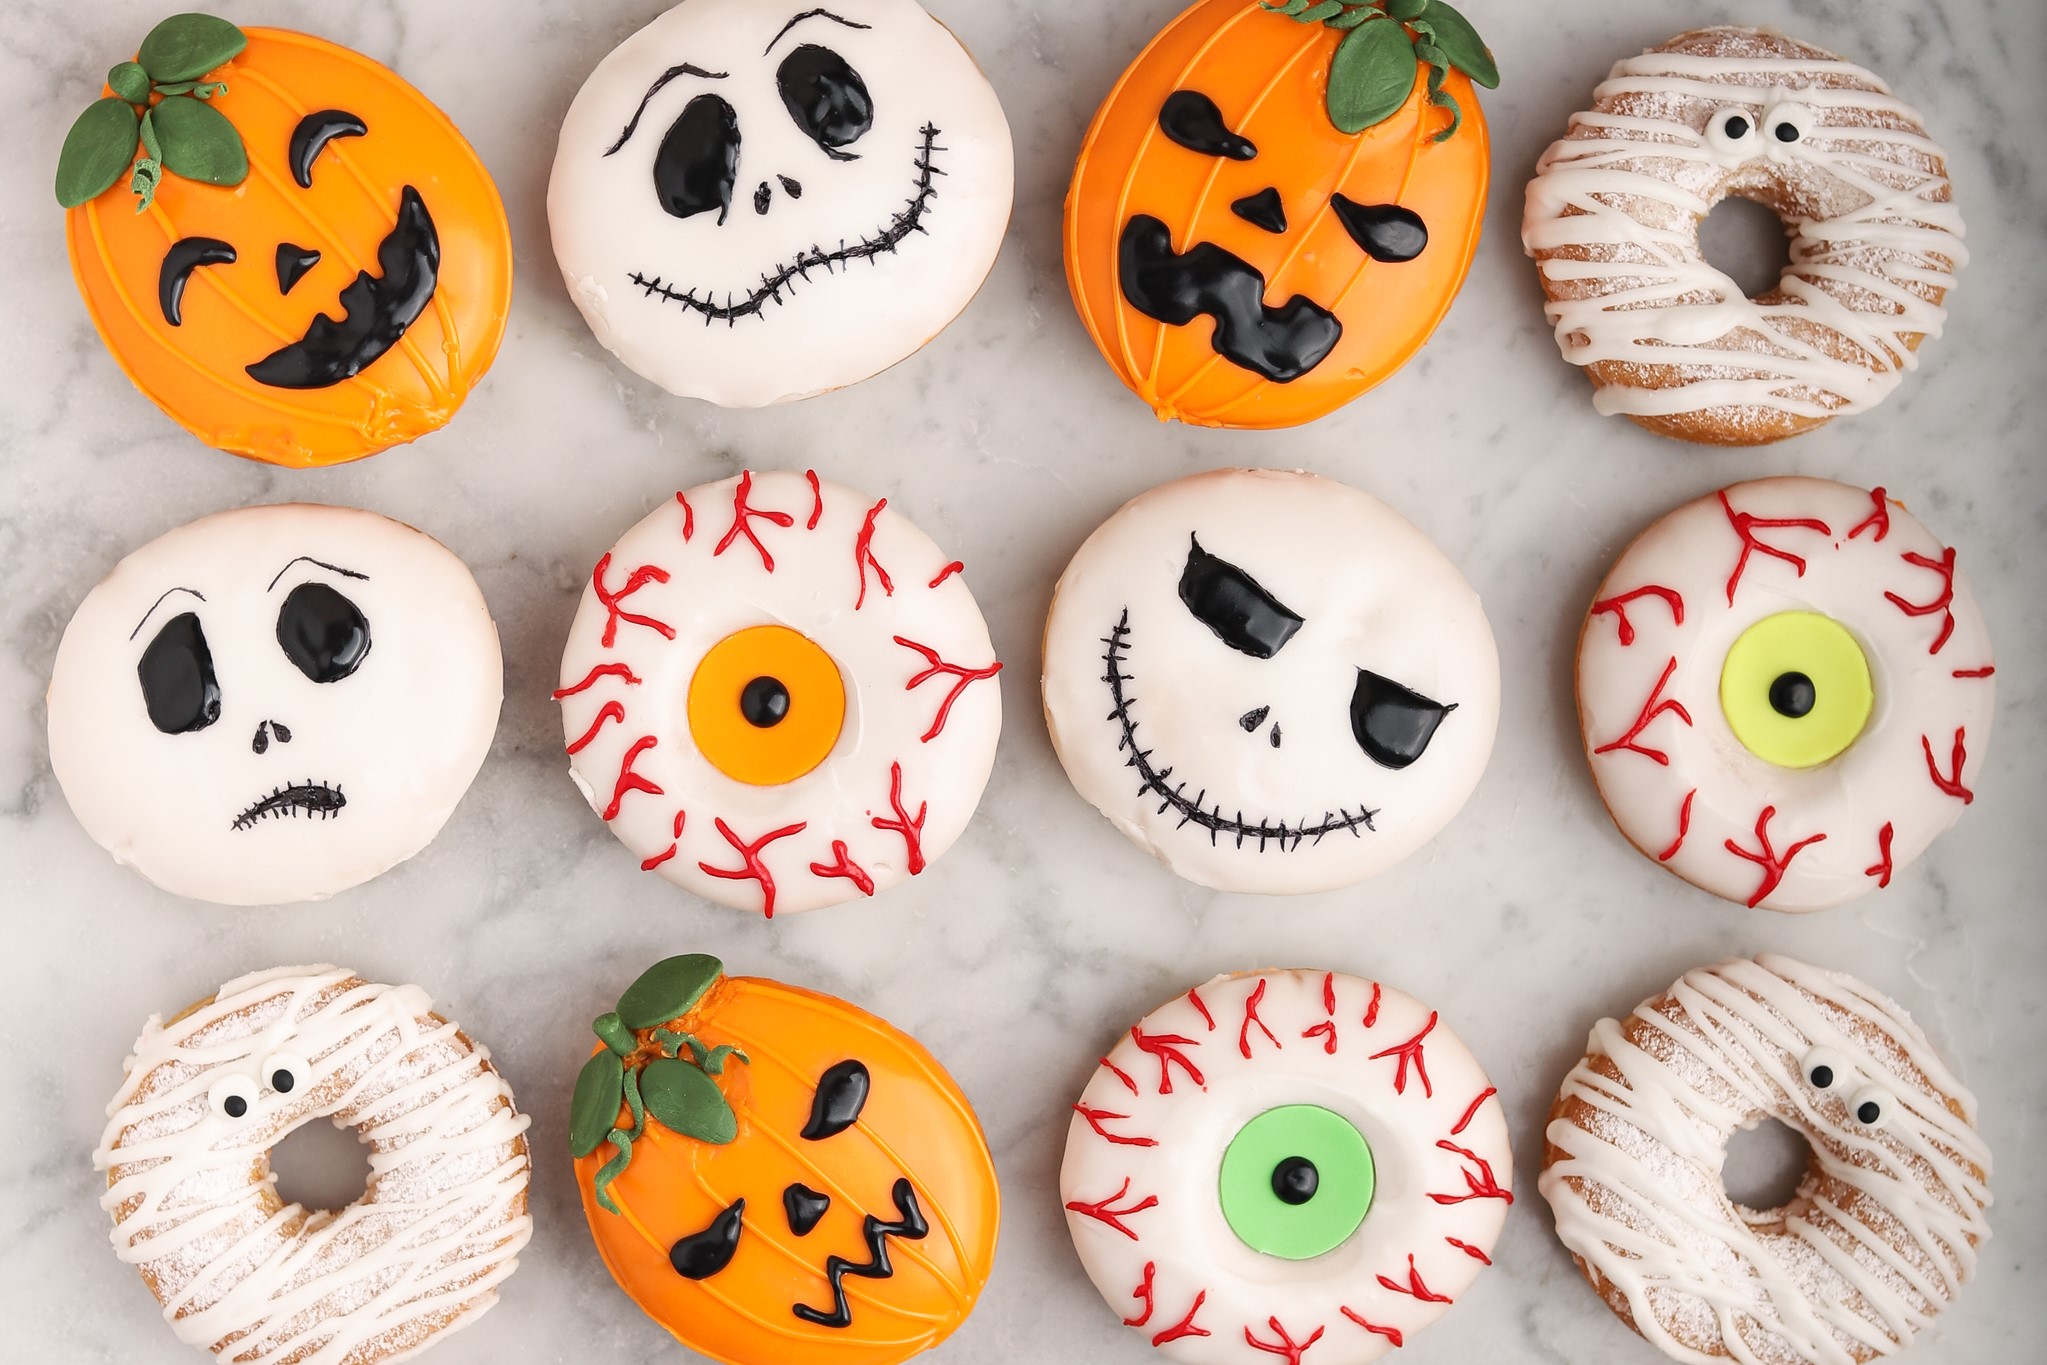 Véresen komoly halloweeni fánkokkal köszönthetjük az októbert a Cream Donuts and Shakesben